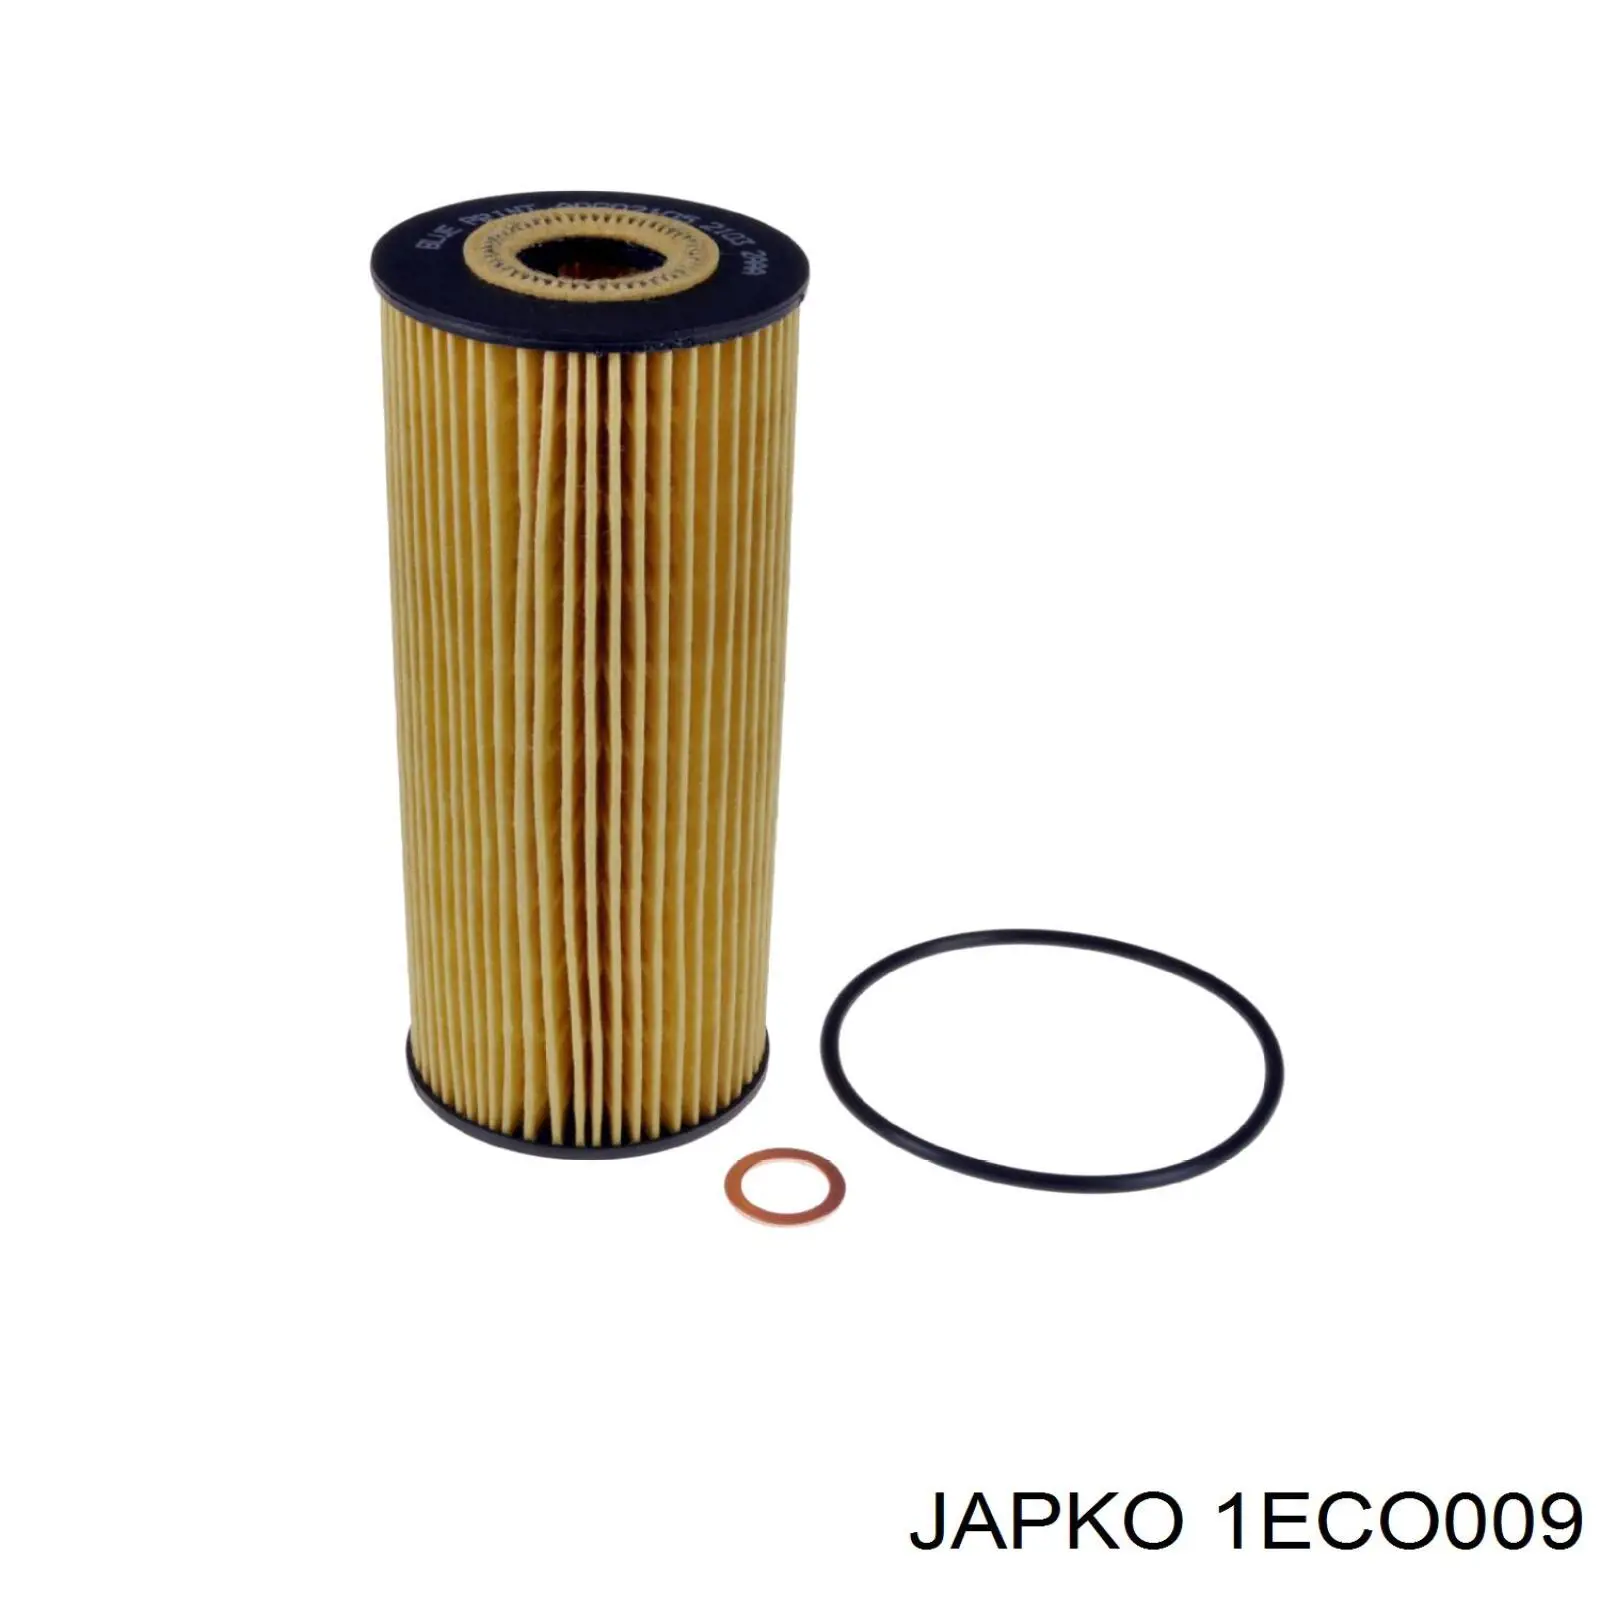 1ECO009 Japko filtro de aceite